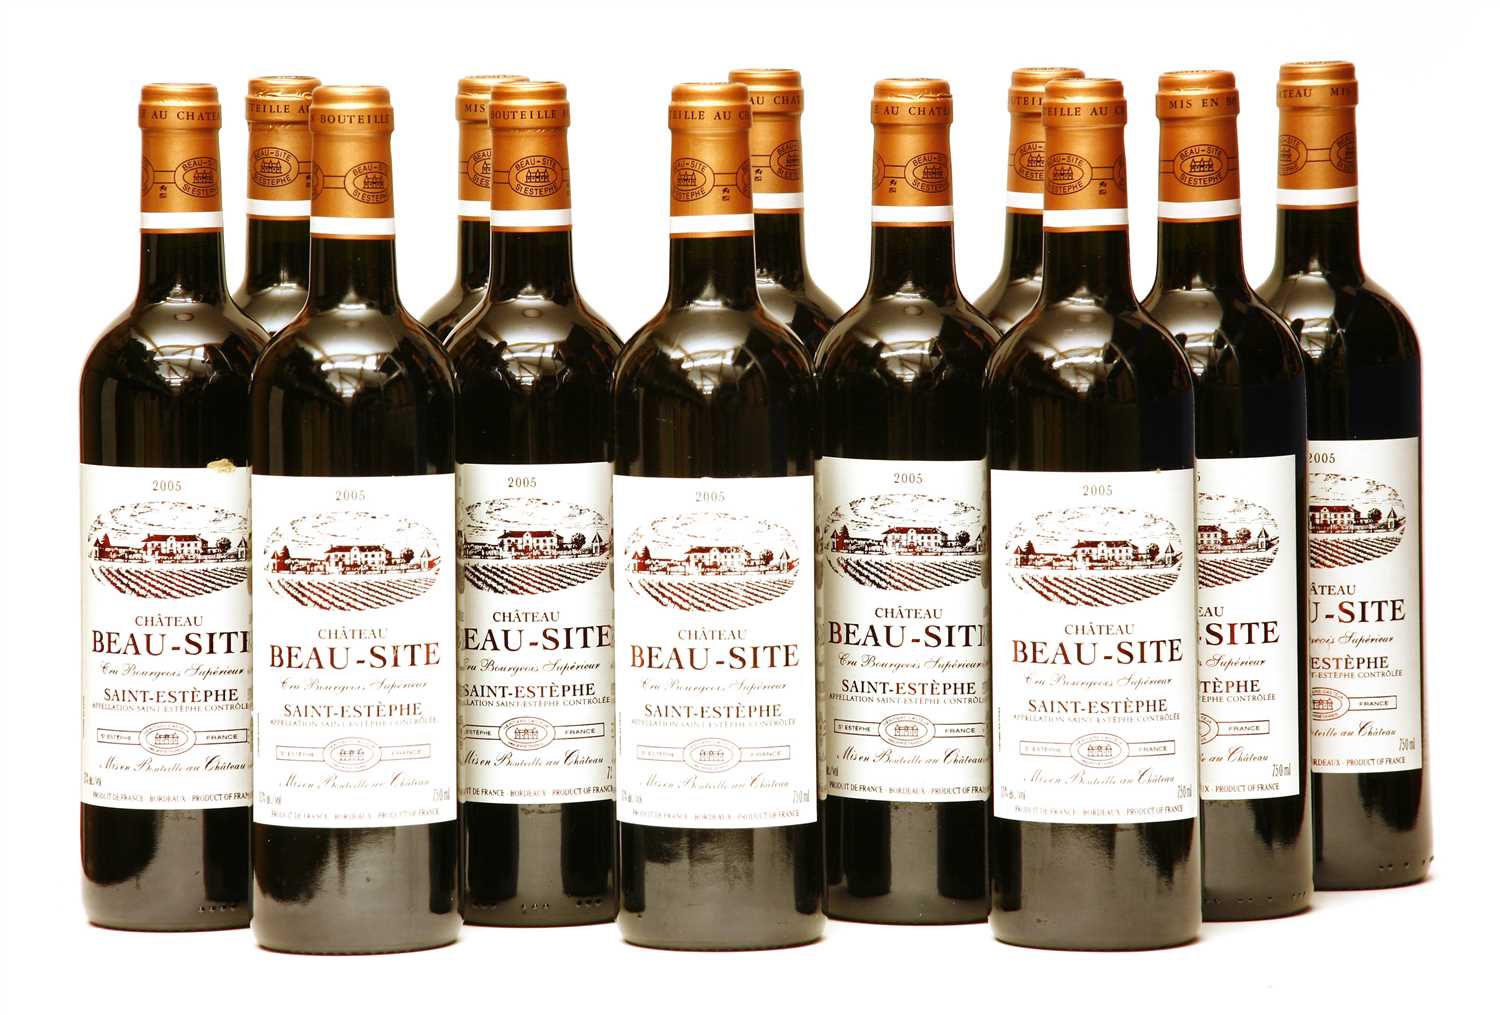 Lot 141 - Château Beau-Site, Saint-Estèphe, Cru Bourgeois Supérieur, 2005, twelve bottles (boxed)